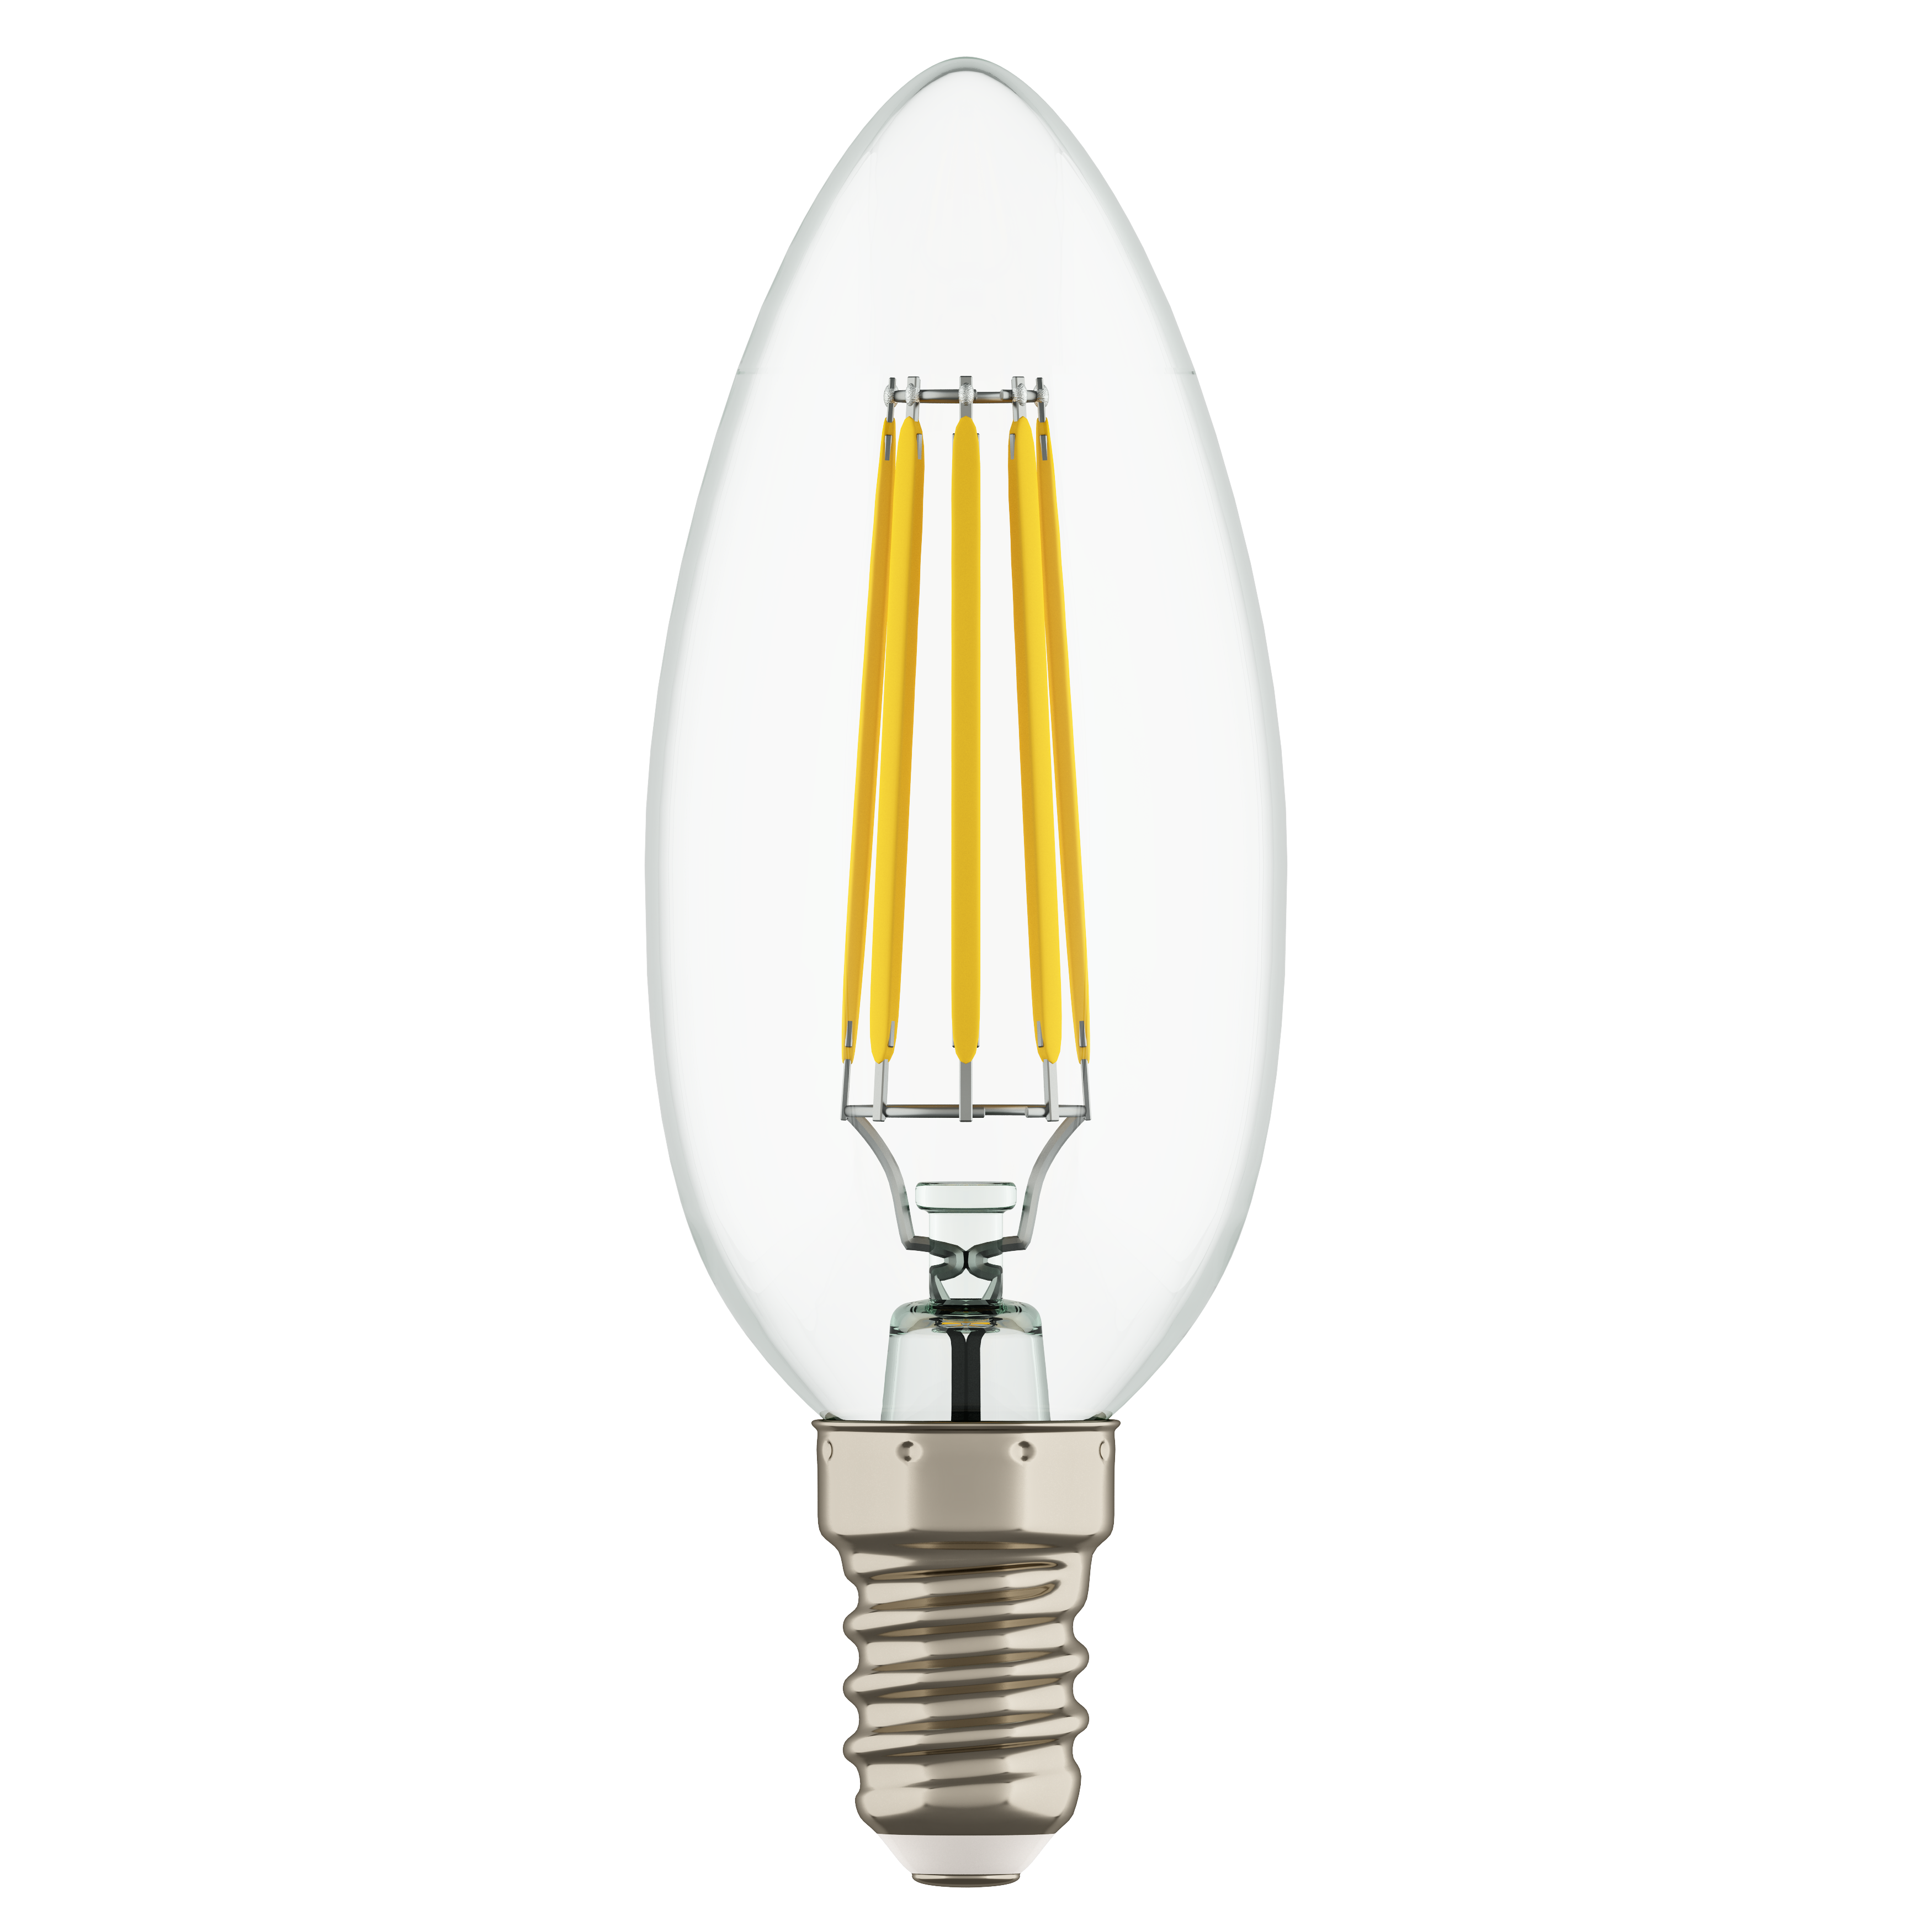 Филаментная led лампа. Светодиодная лампа филамент 4вт. E14 светодиодная лампа 3000k. Цоколь e14 светодиодная лампа. Филаментная лампа е14.